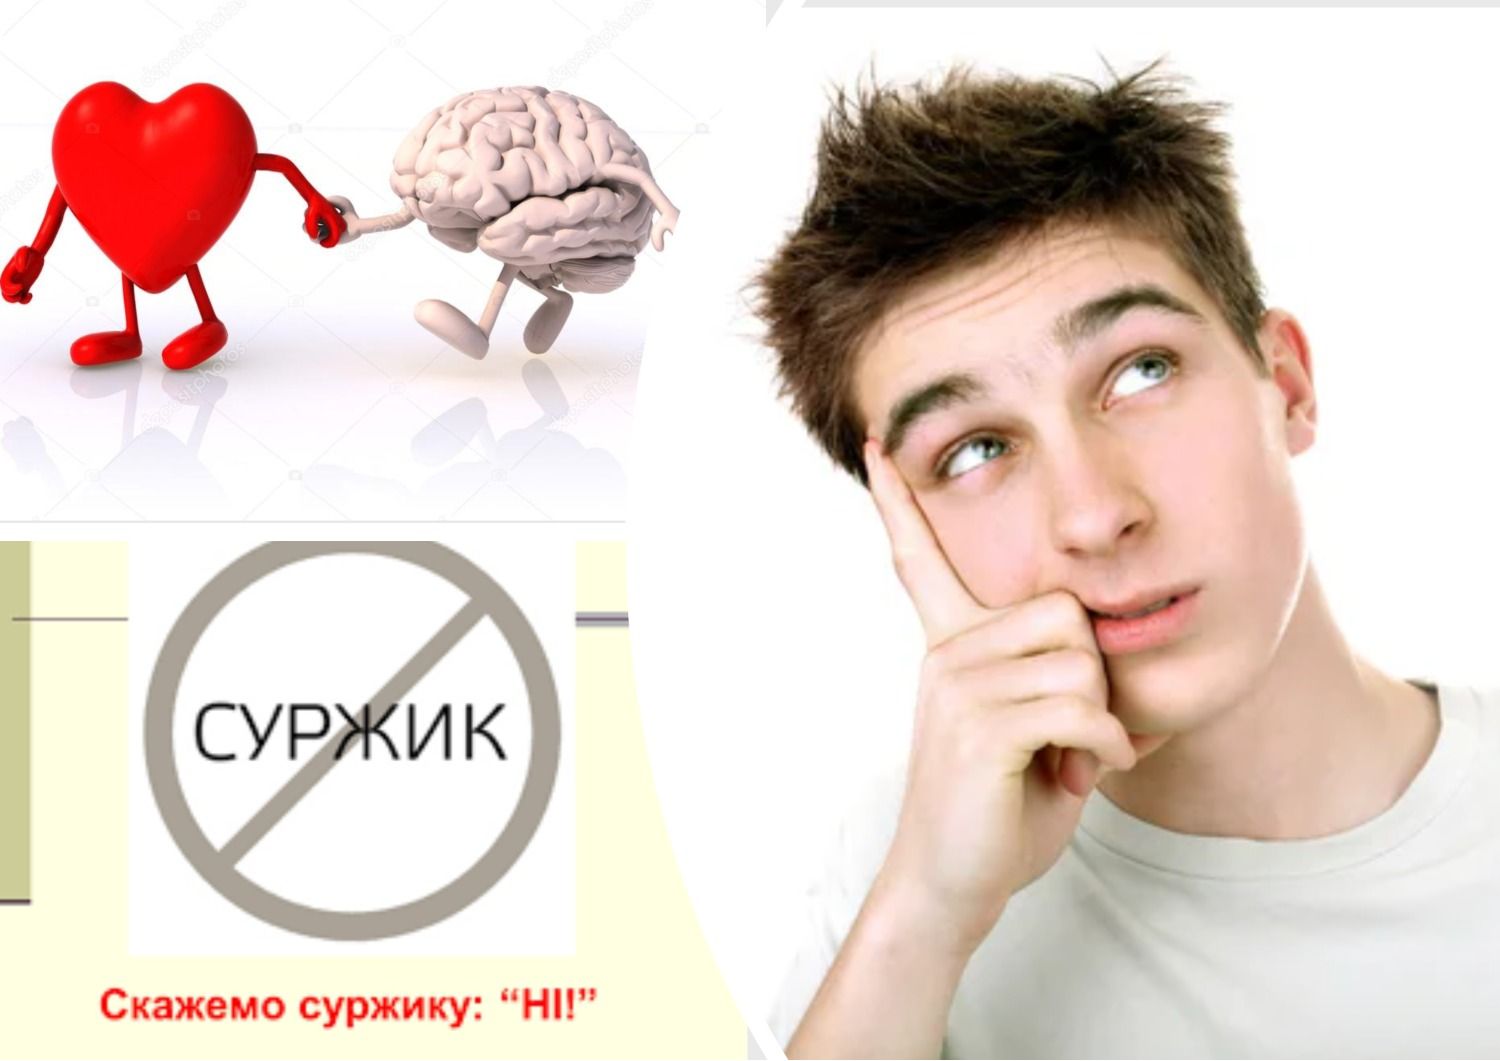 Антисуржик - як правильно називати українською органи людини - 24 Канал - Освіта